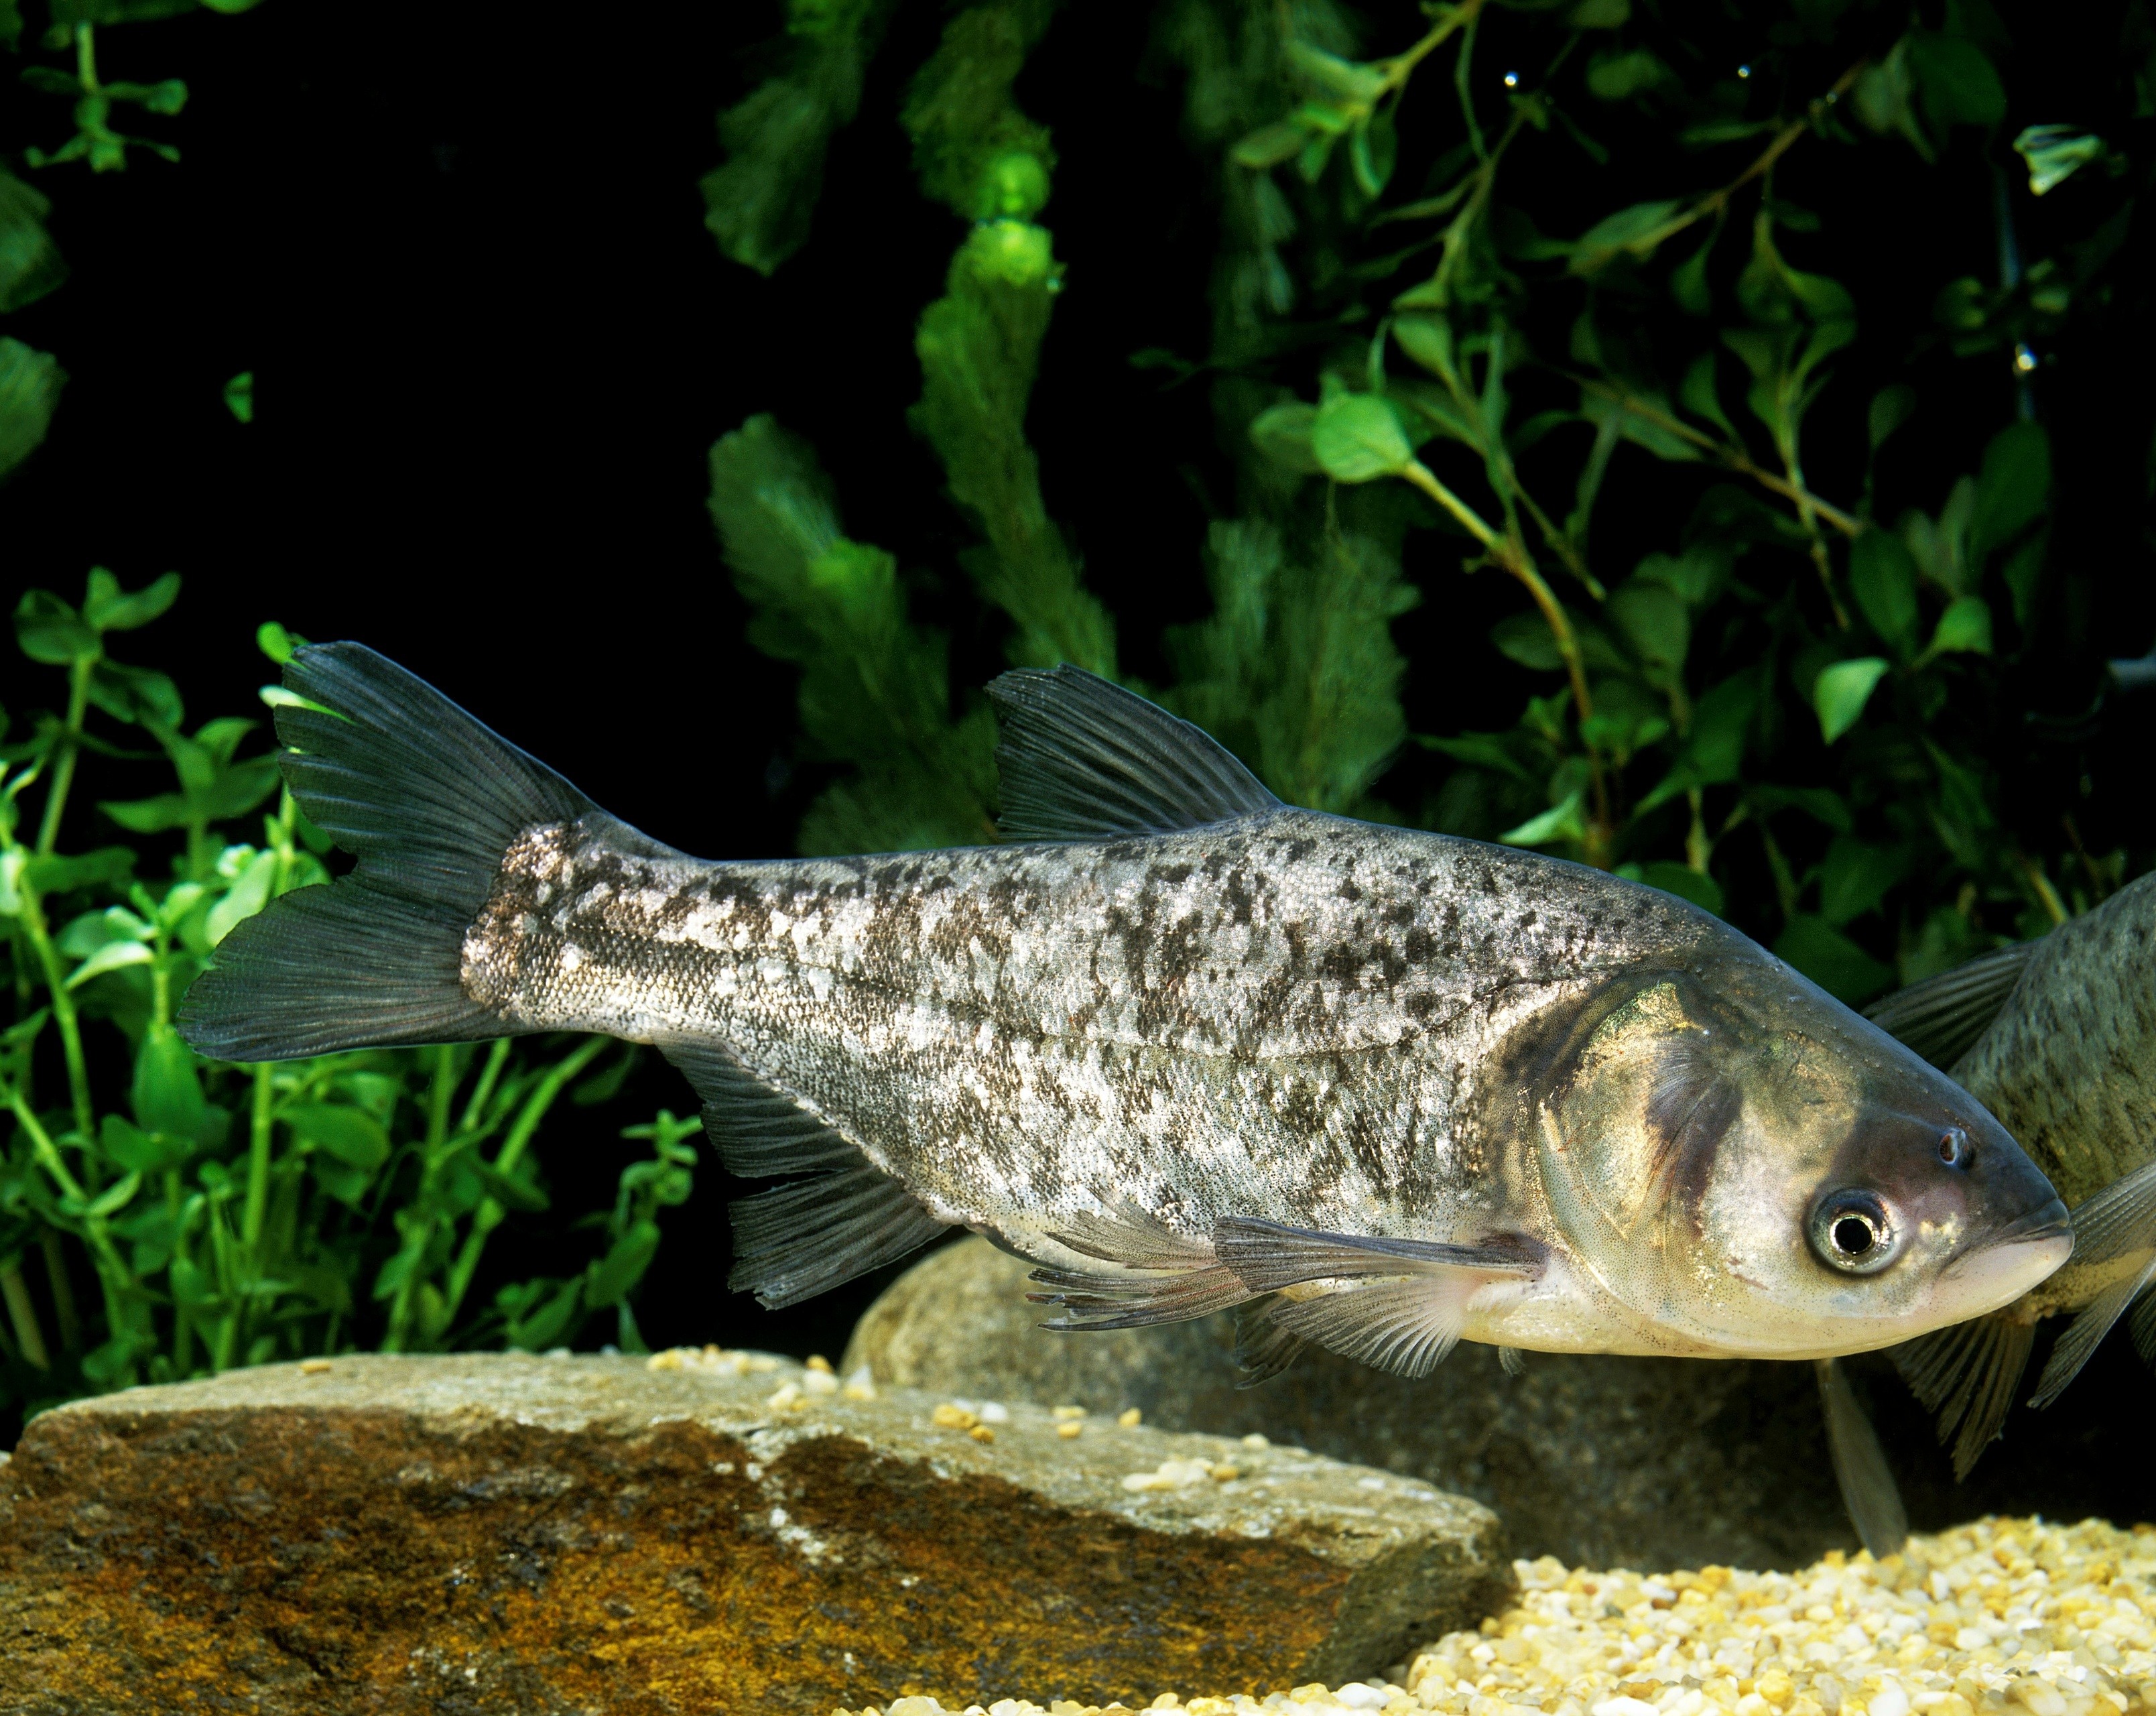 A silver carp